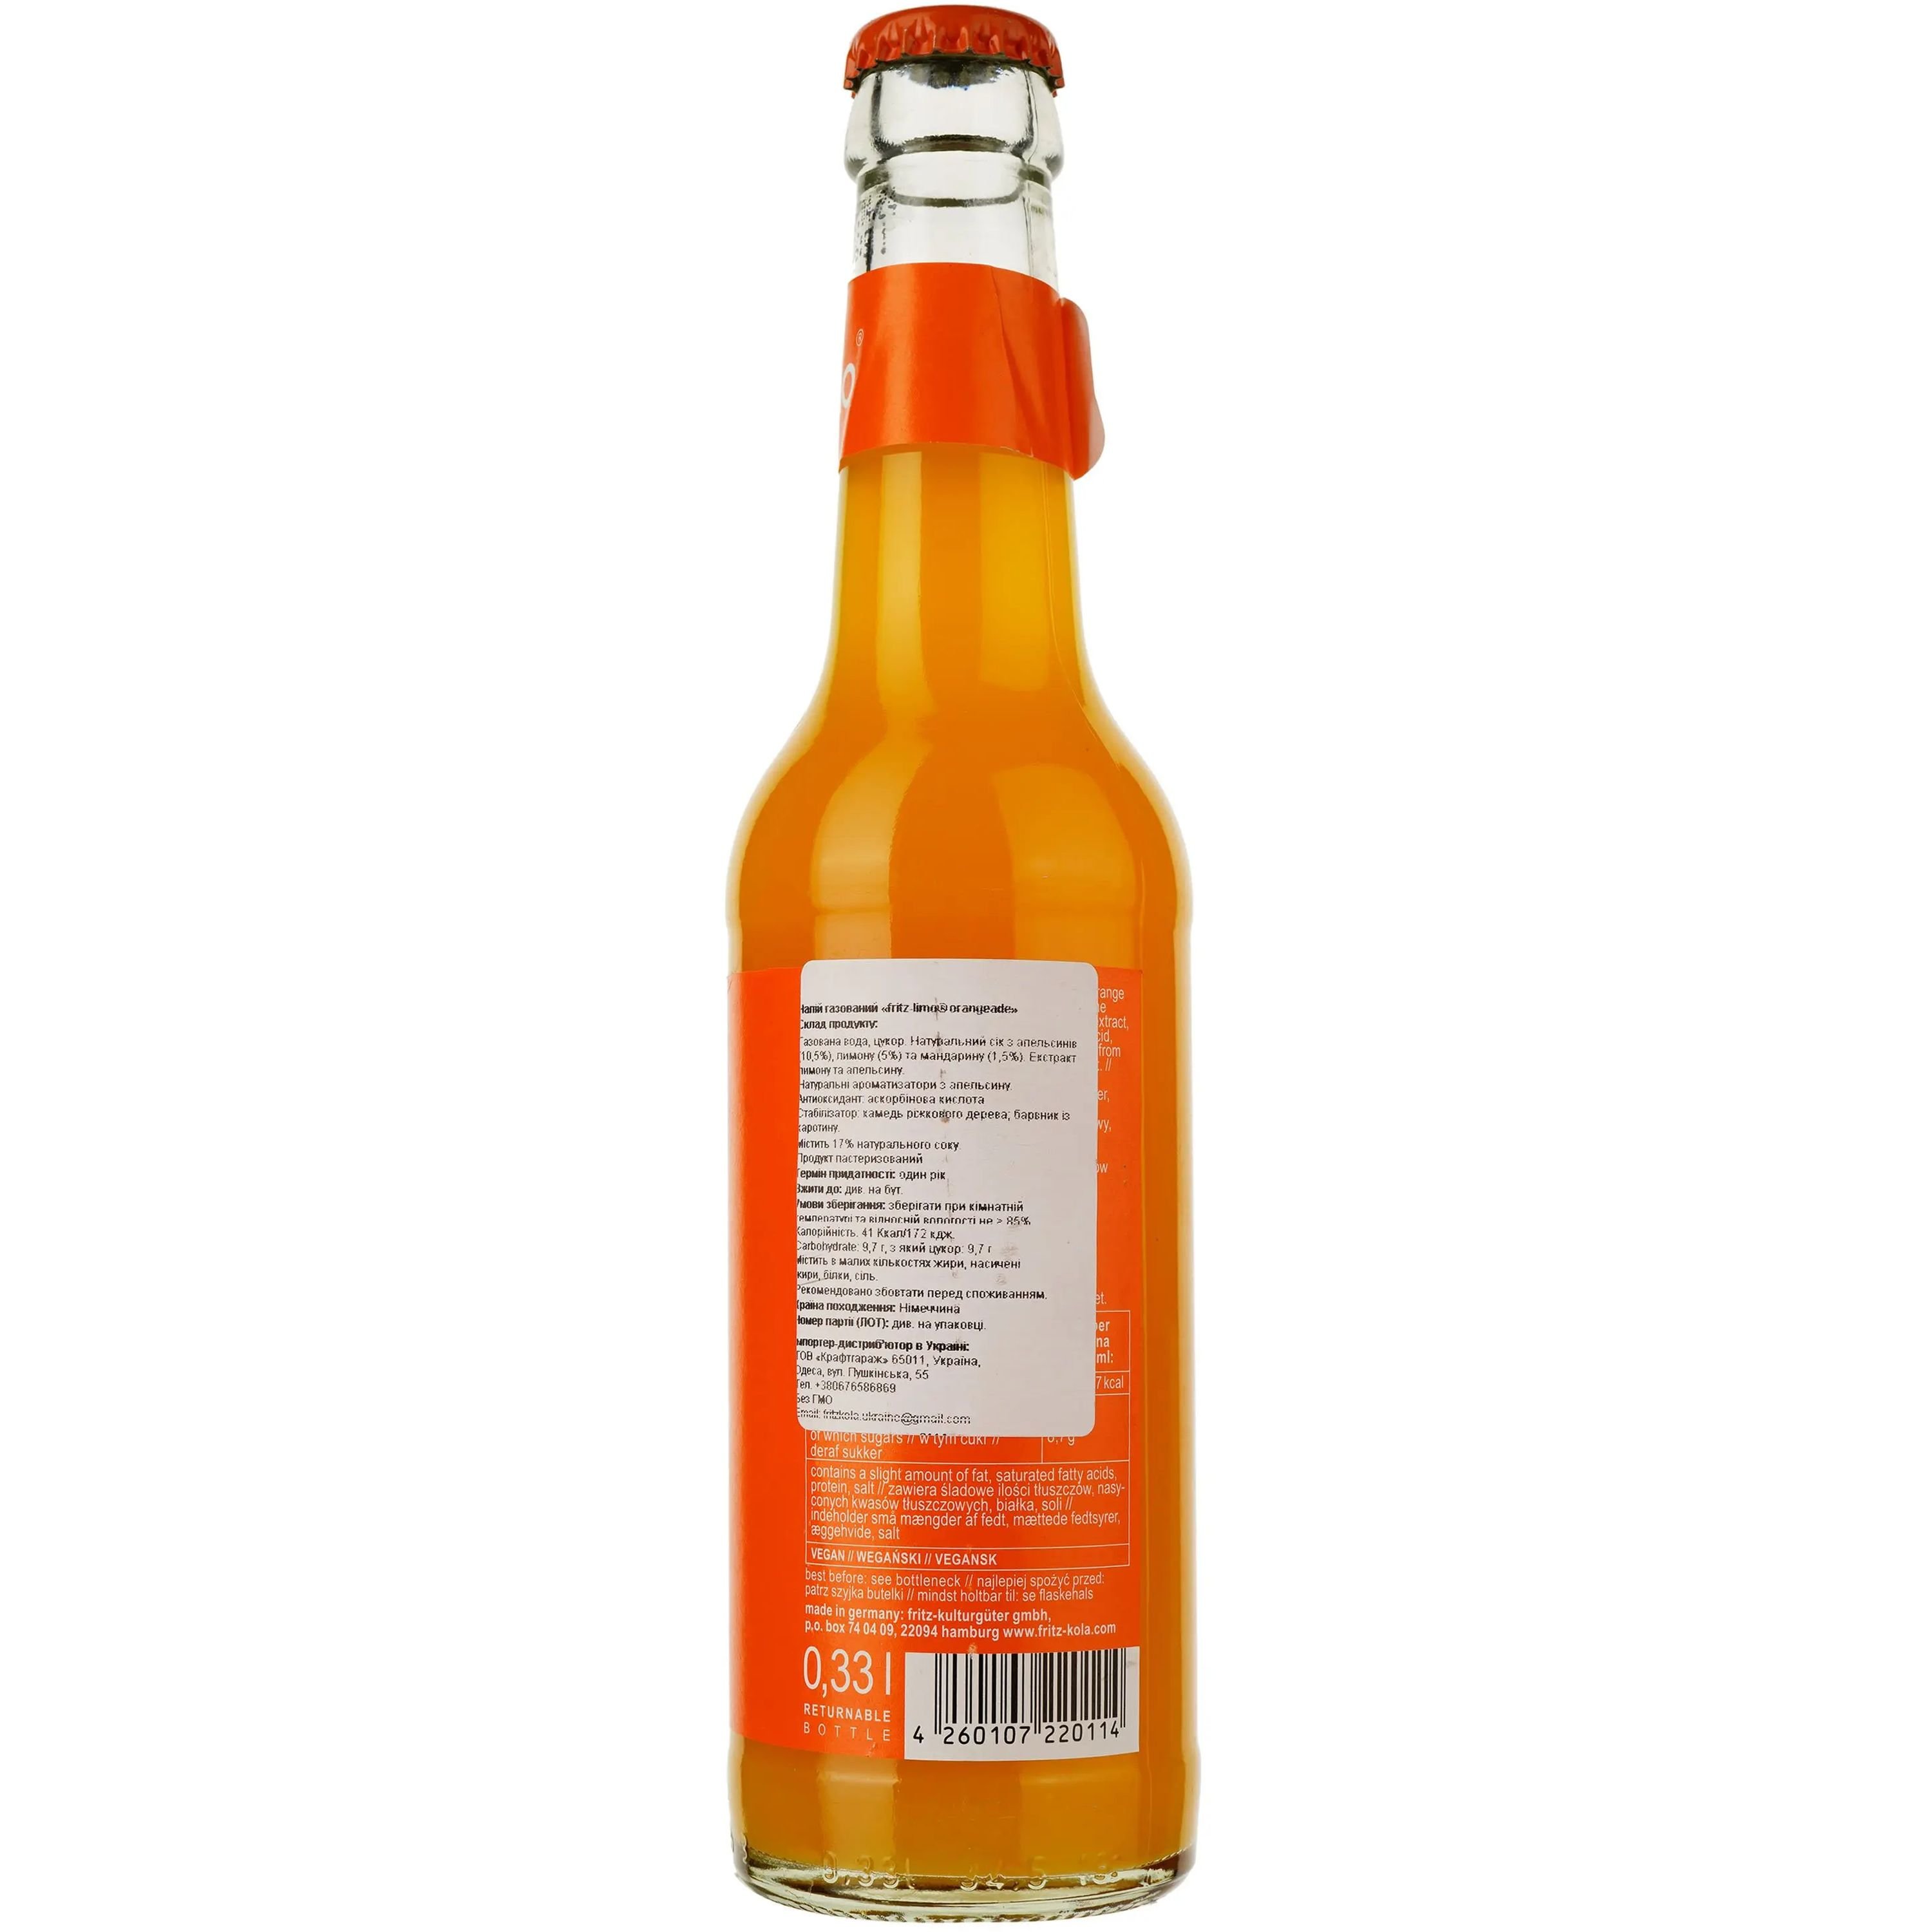 Напиток Fritz-Limo Orangelimonade безалкогольный 0.33 л - фото 2